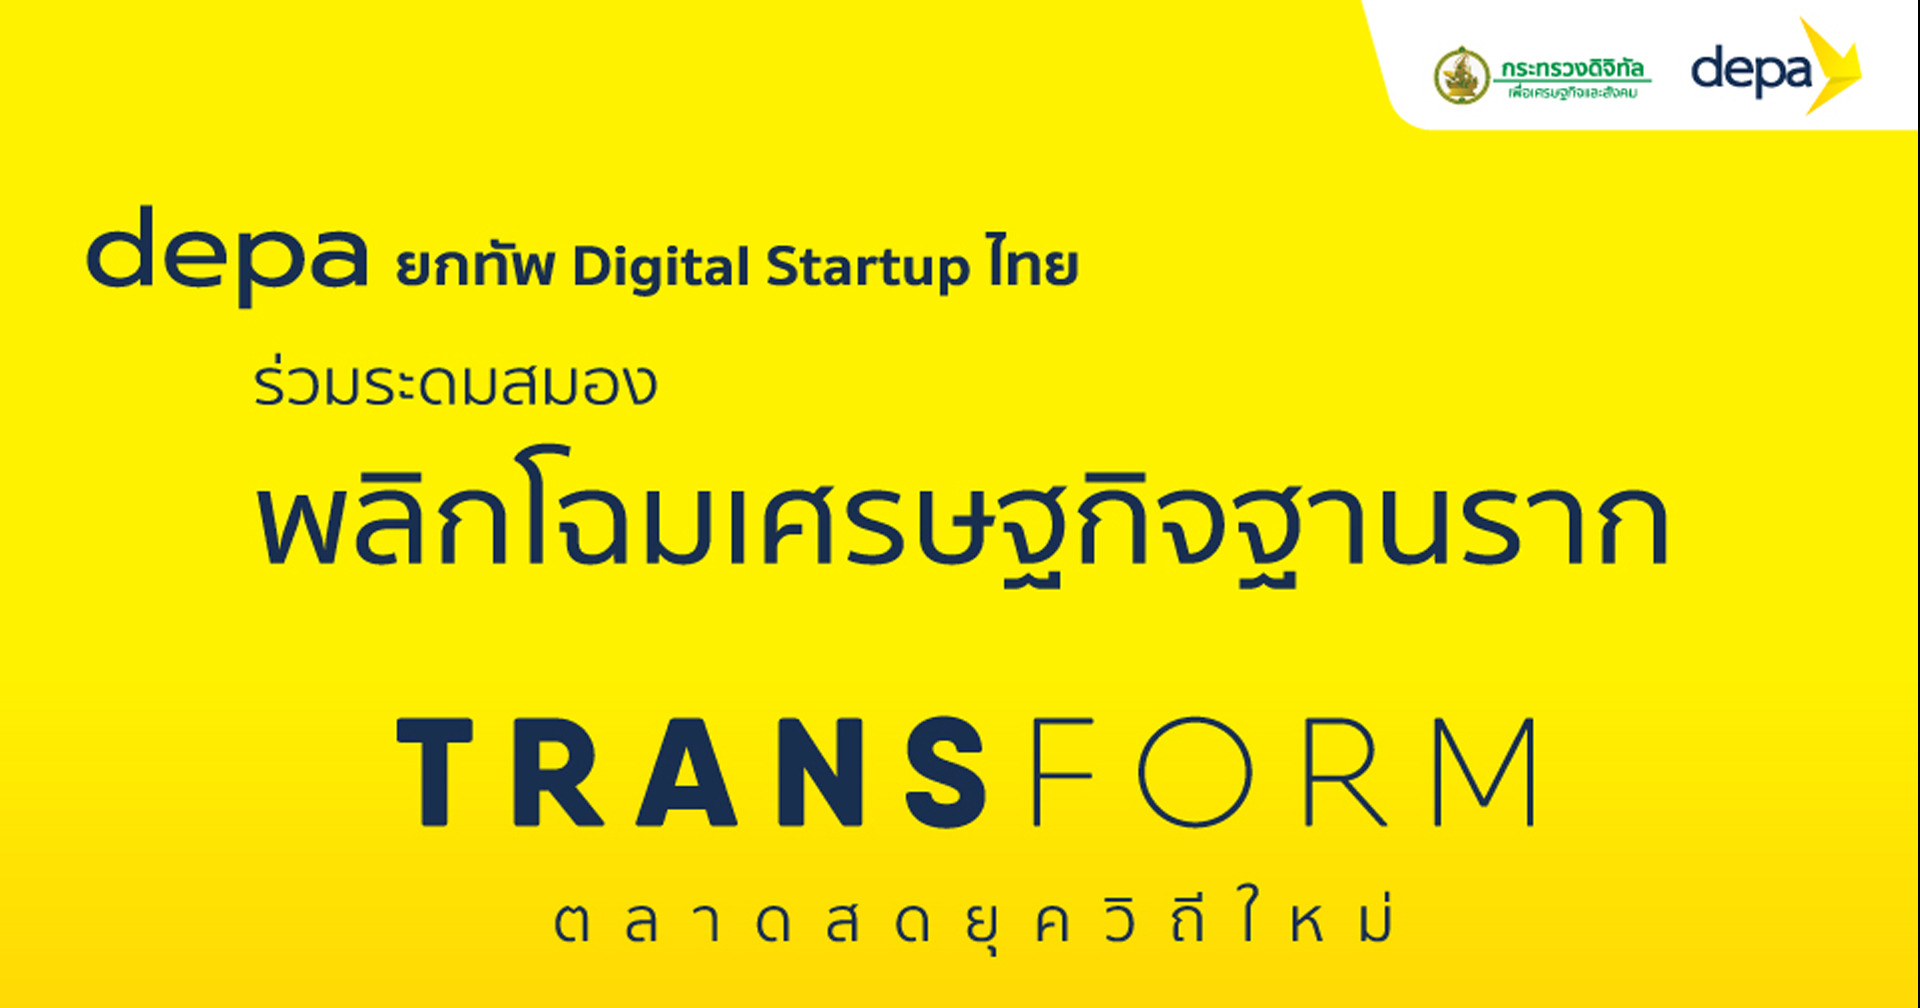 depa ชวน Digital Startup เข้าร่วมประชุมพลิกโฉมธุรกิจ Tranform ตลาดสดยุควิถีใหม่ ใน 10 จังหวัด